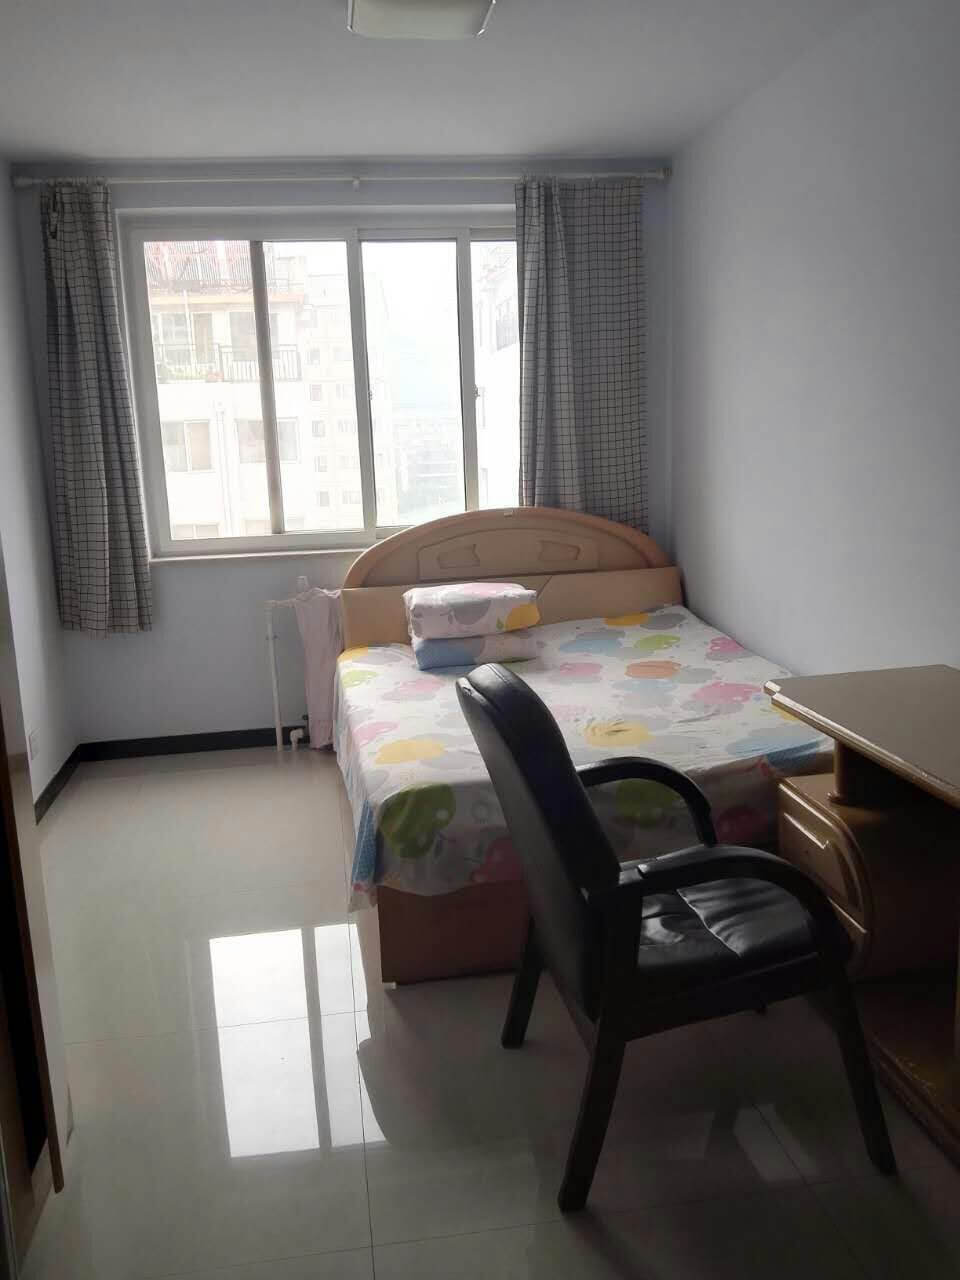 Bedroom in Chengde